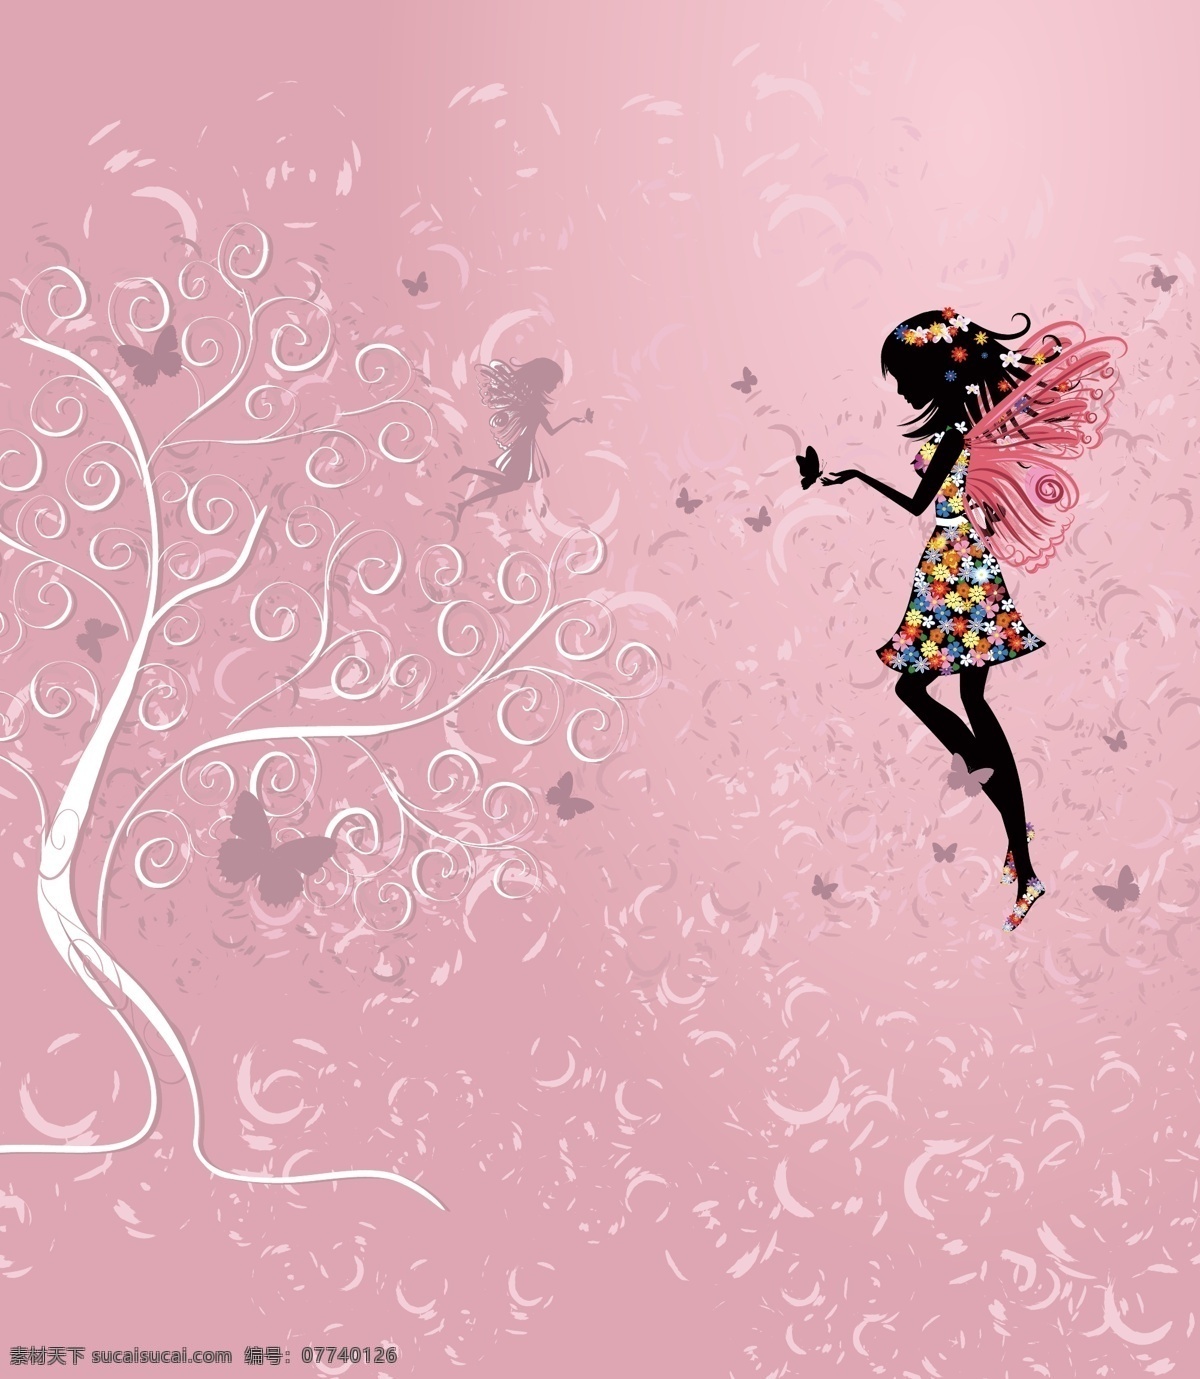 粉红色背景 少女 粉色 烟雾 背景 人物 粉红色 少女心 大树 花纹 室外广告设计